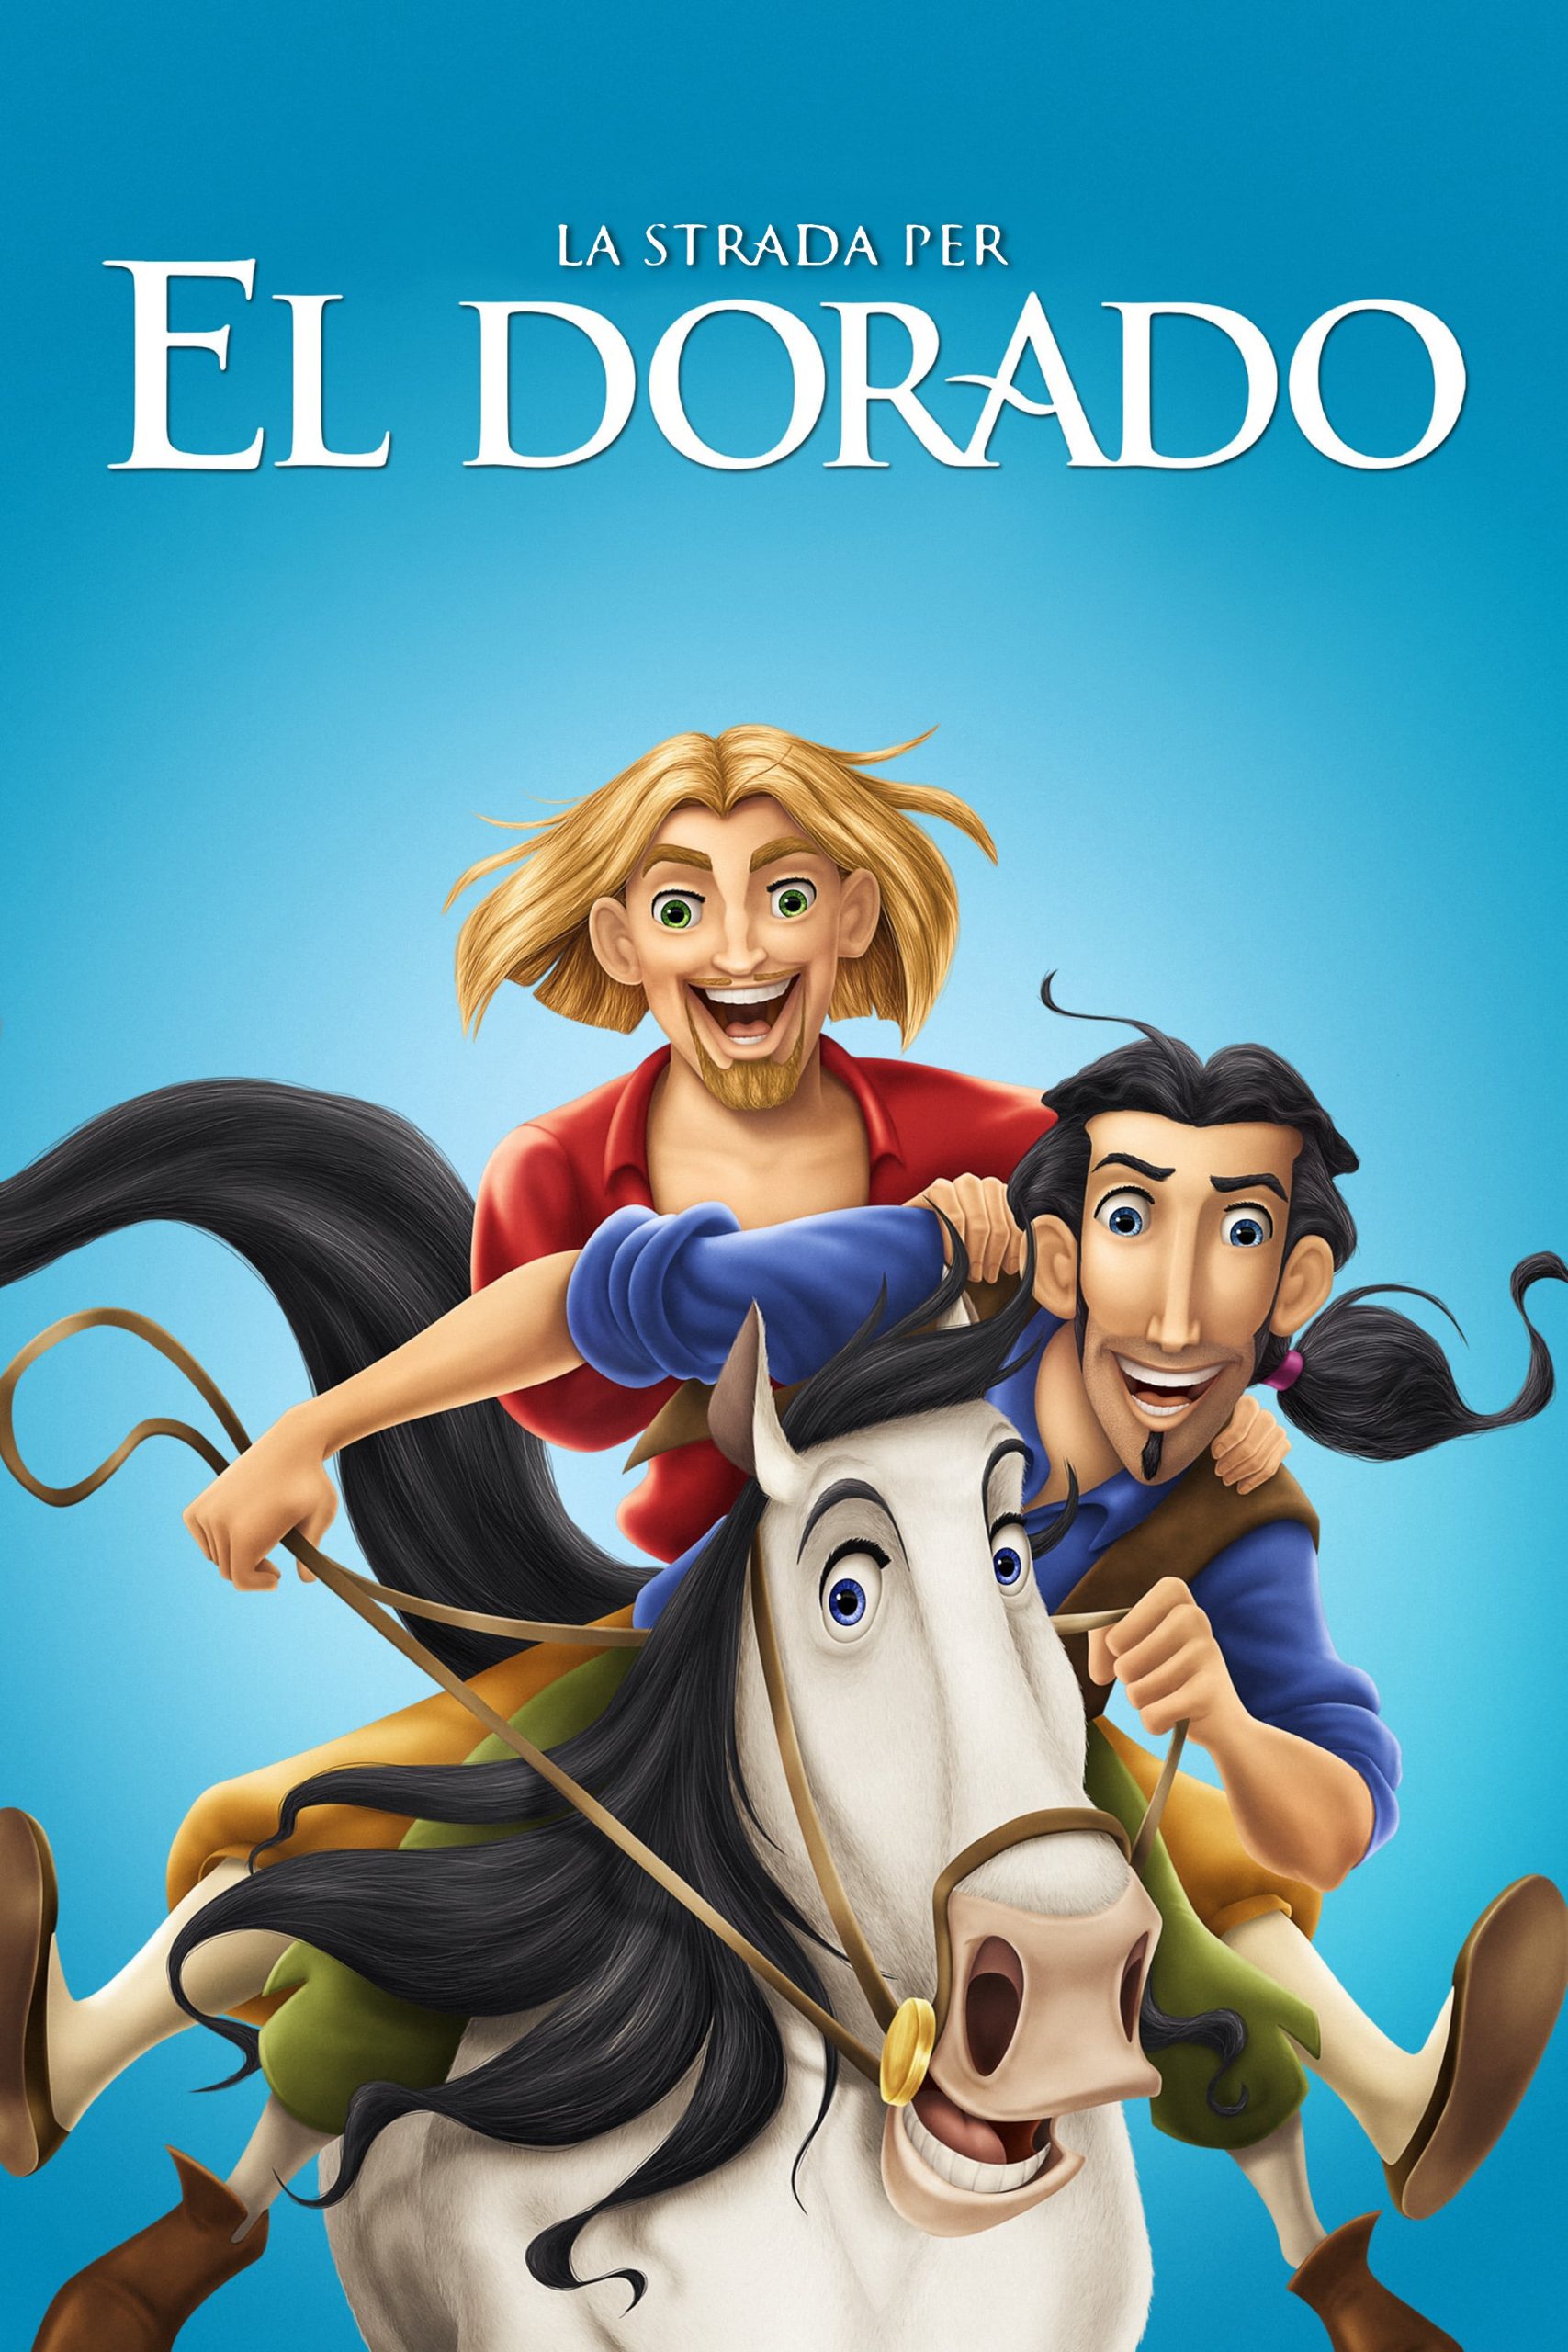 La strada per El Dorado [HD] (2000)